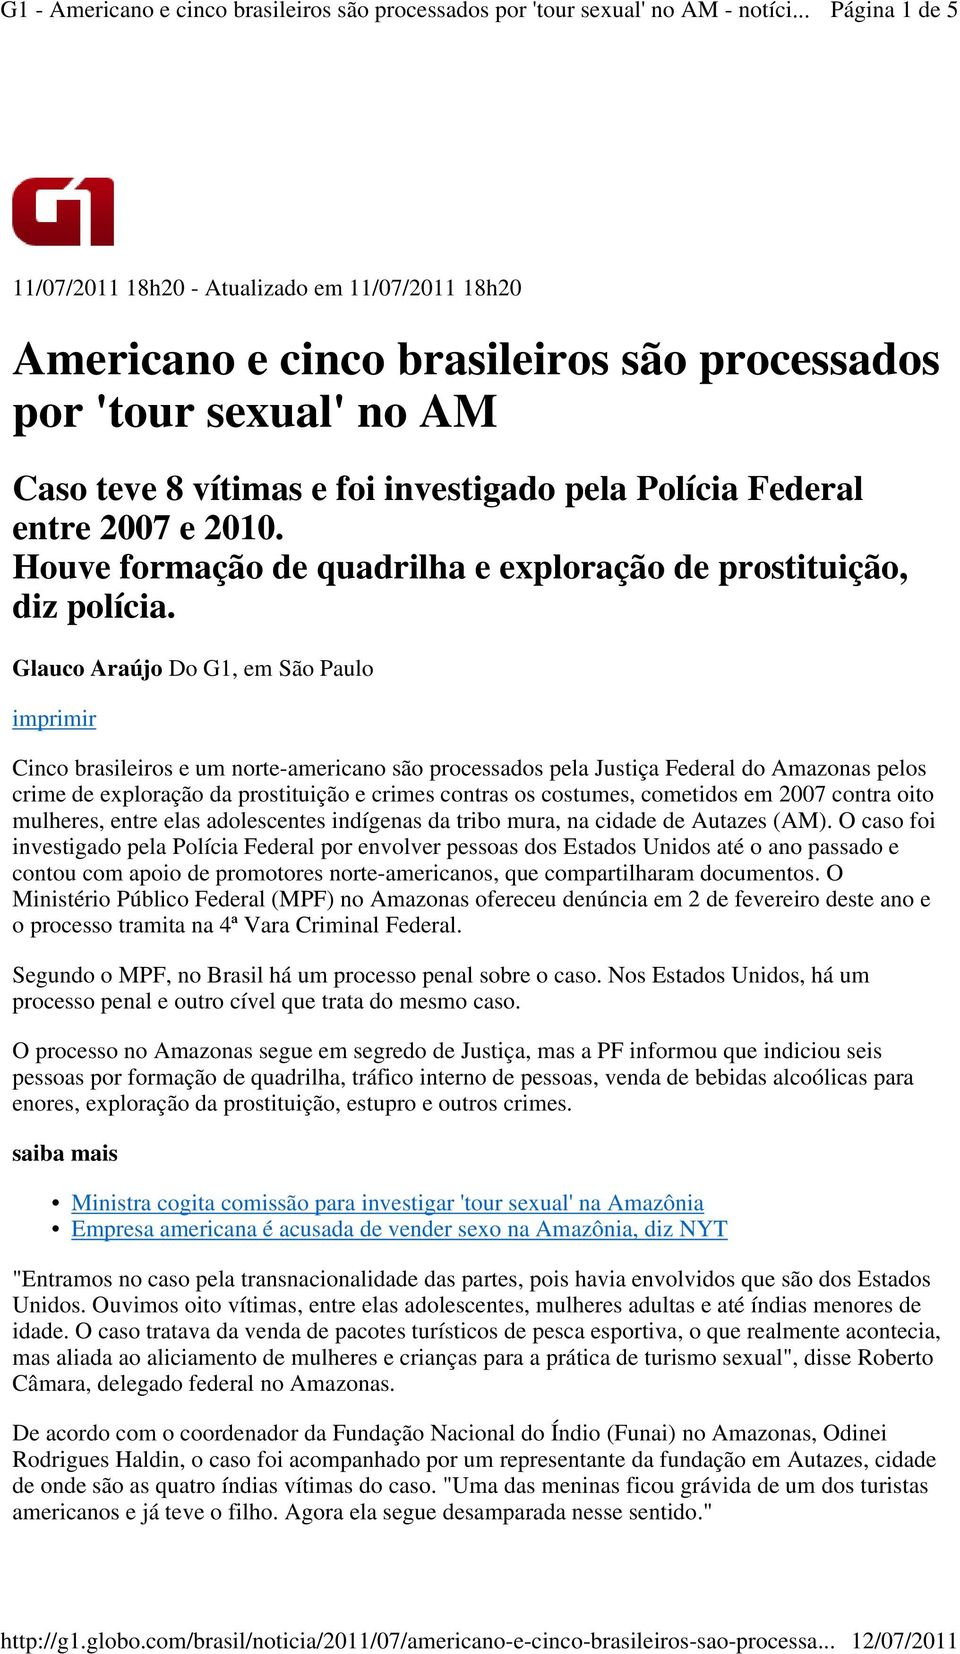 Glauco Araújo Do G1, em São Paulo imprimir Cinco brasileiros e um norte-americano são processados pela Justiça Federal do Amazonas pelos crime de exploração da prostituição e crimes contras os